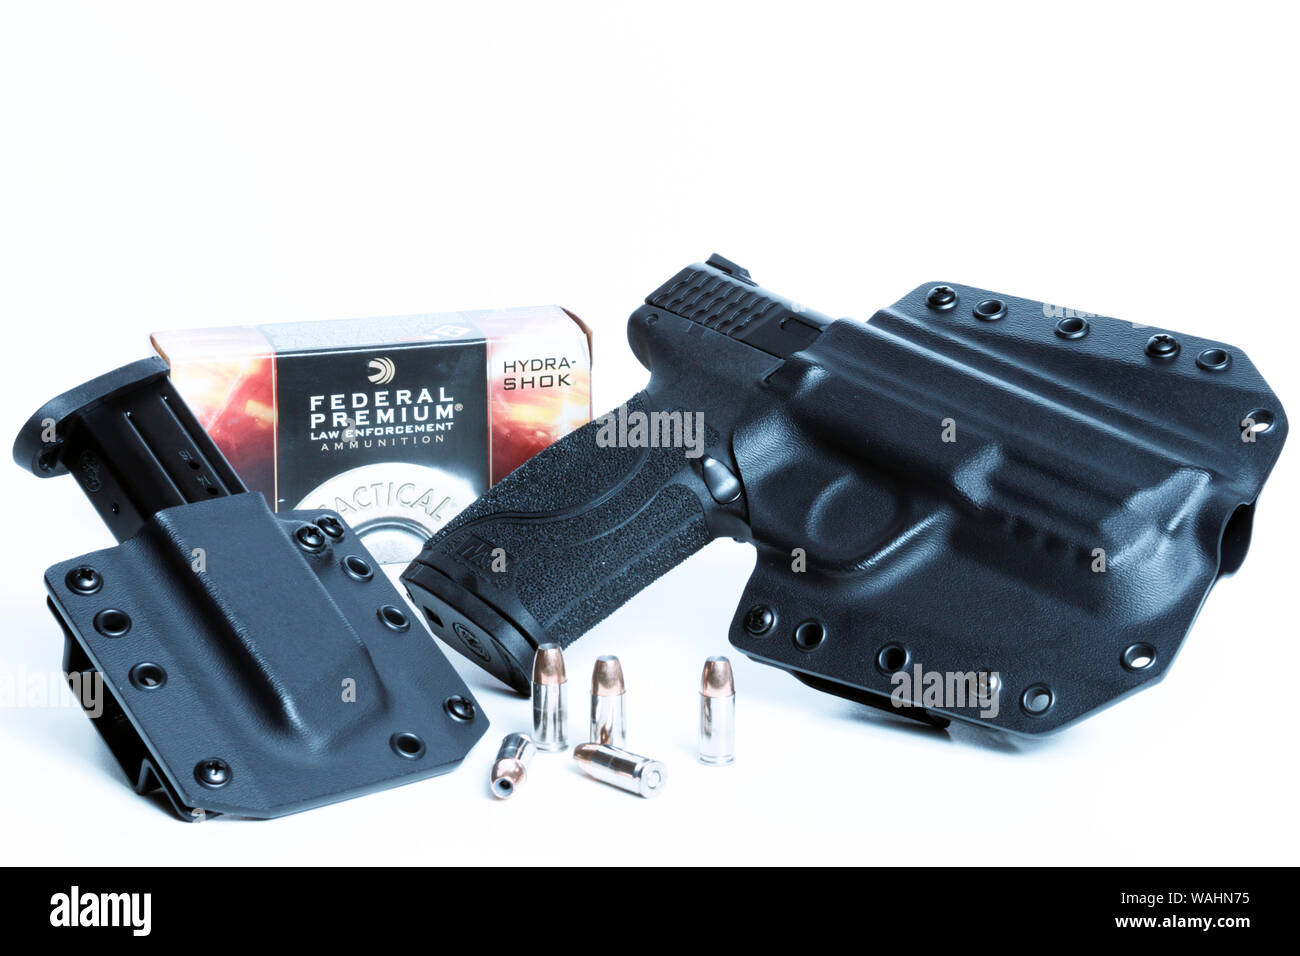 Smith et Wesson 9mm dans la dissimulation Bravo pour la protection de votre magazine et Hydra-Shok Extra fédérale Munitions Banque D'Images